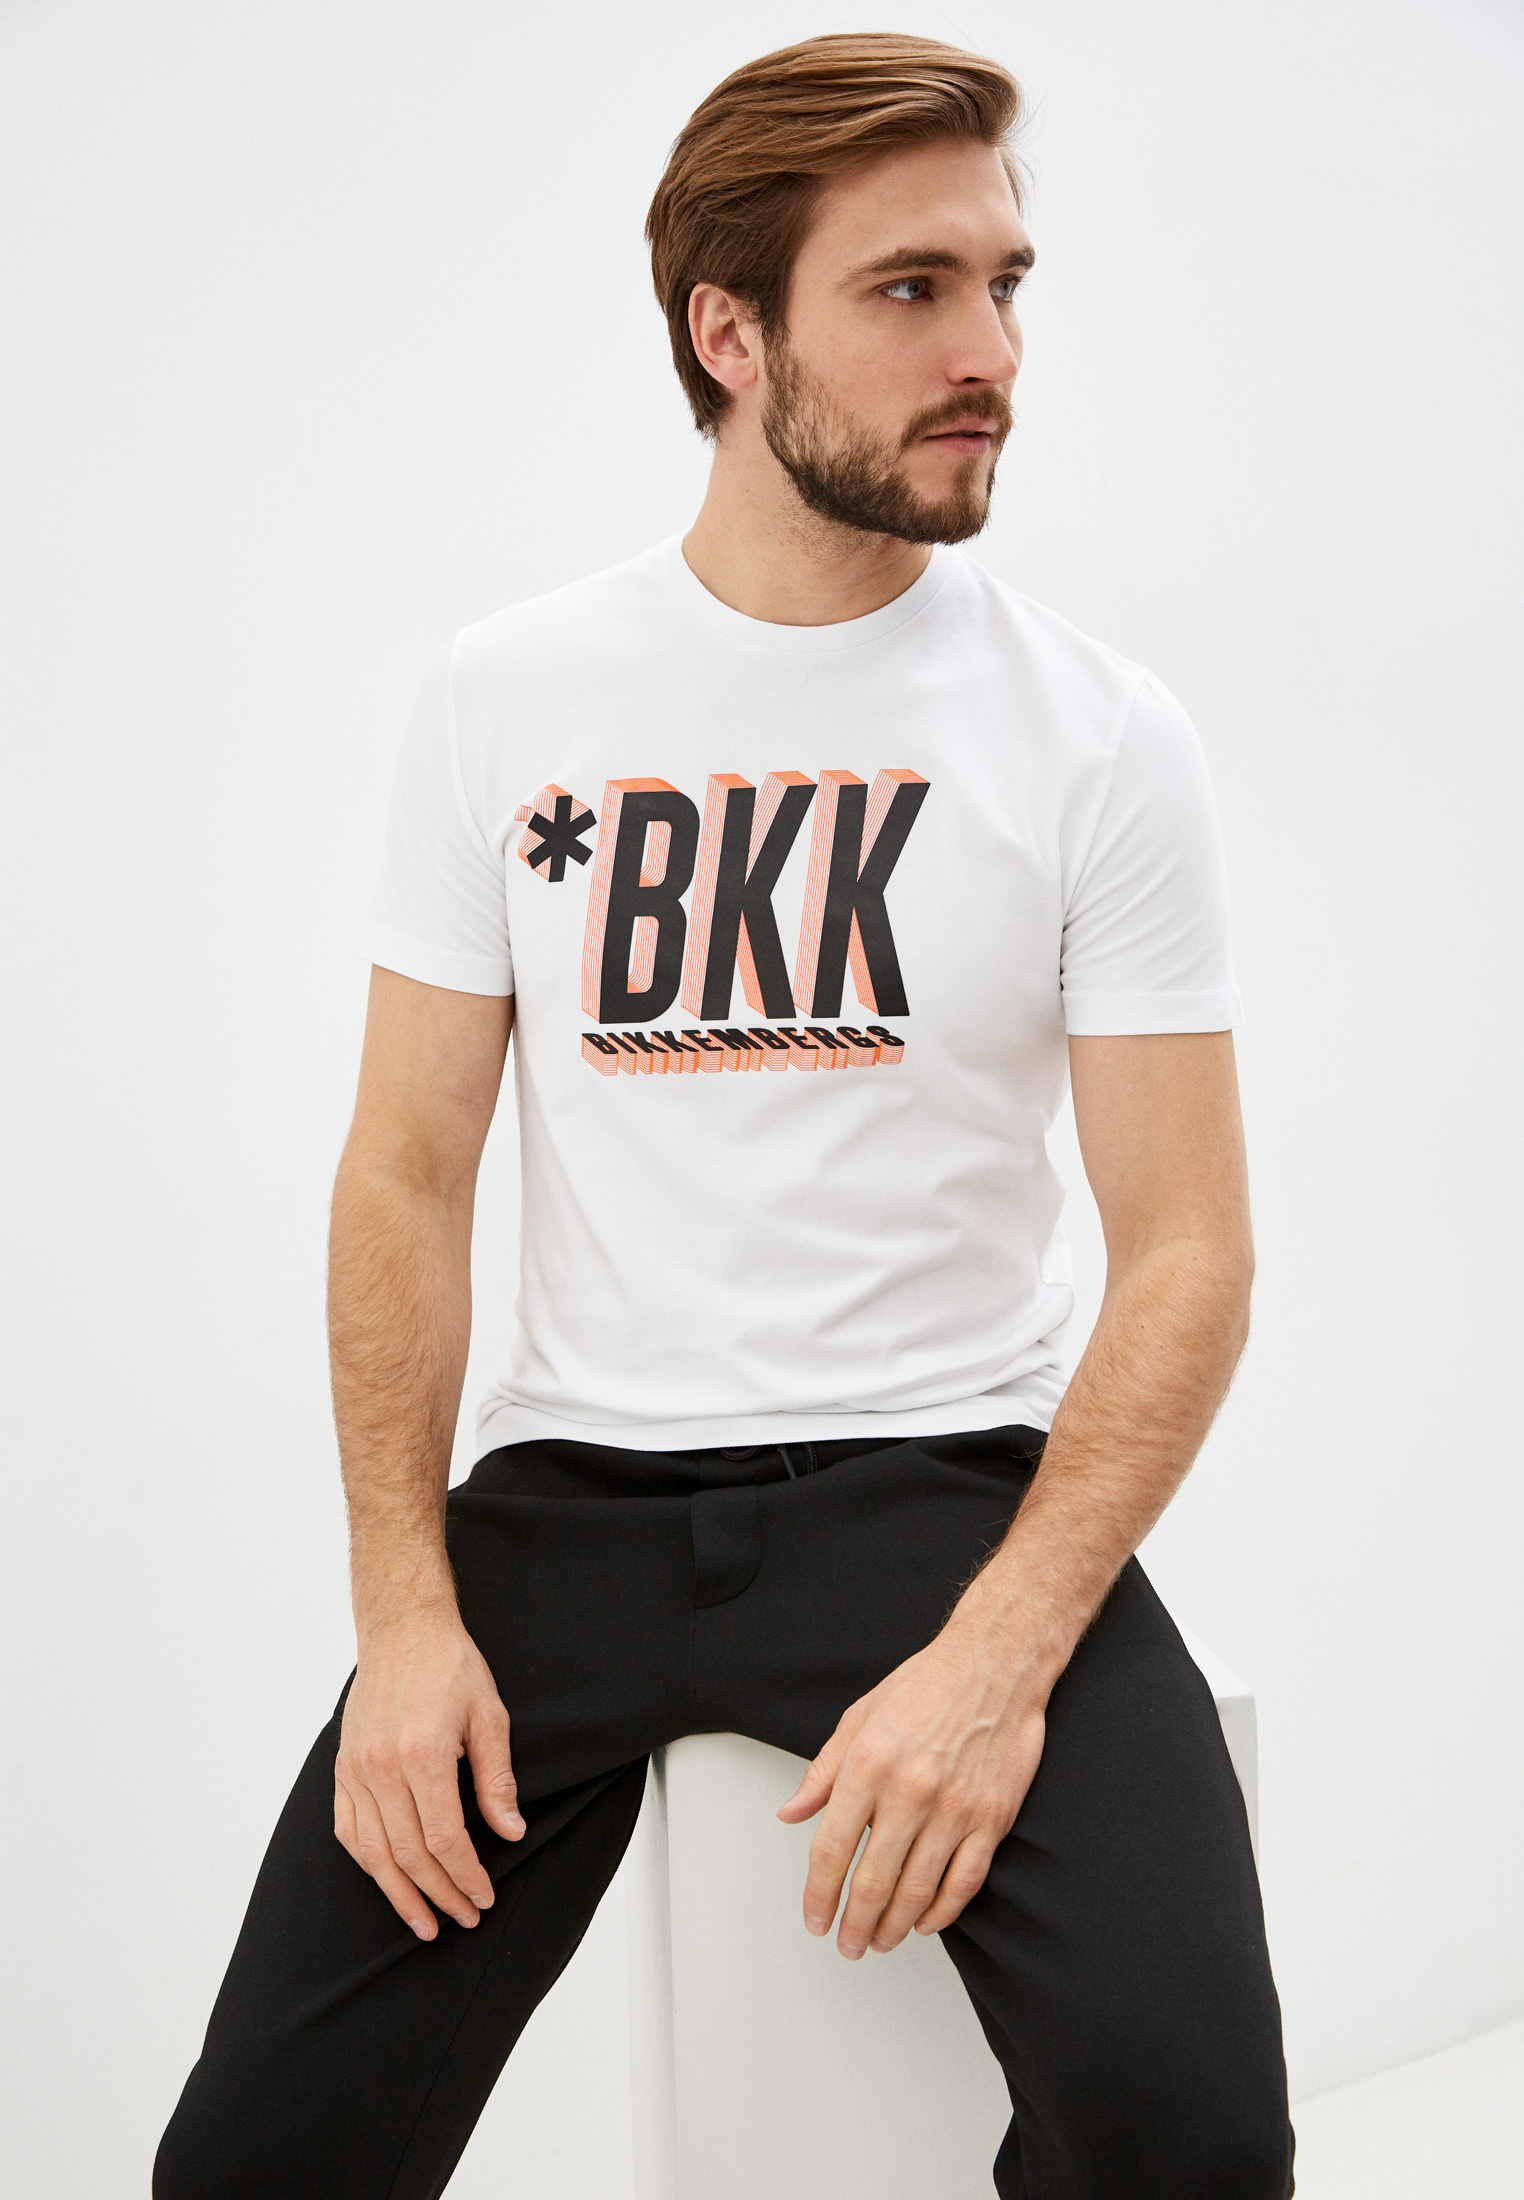 Мужская футболка Bikkembergs (Биккембергс) C 4 101 48 E 2296: изображение 1